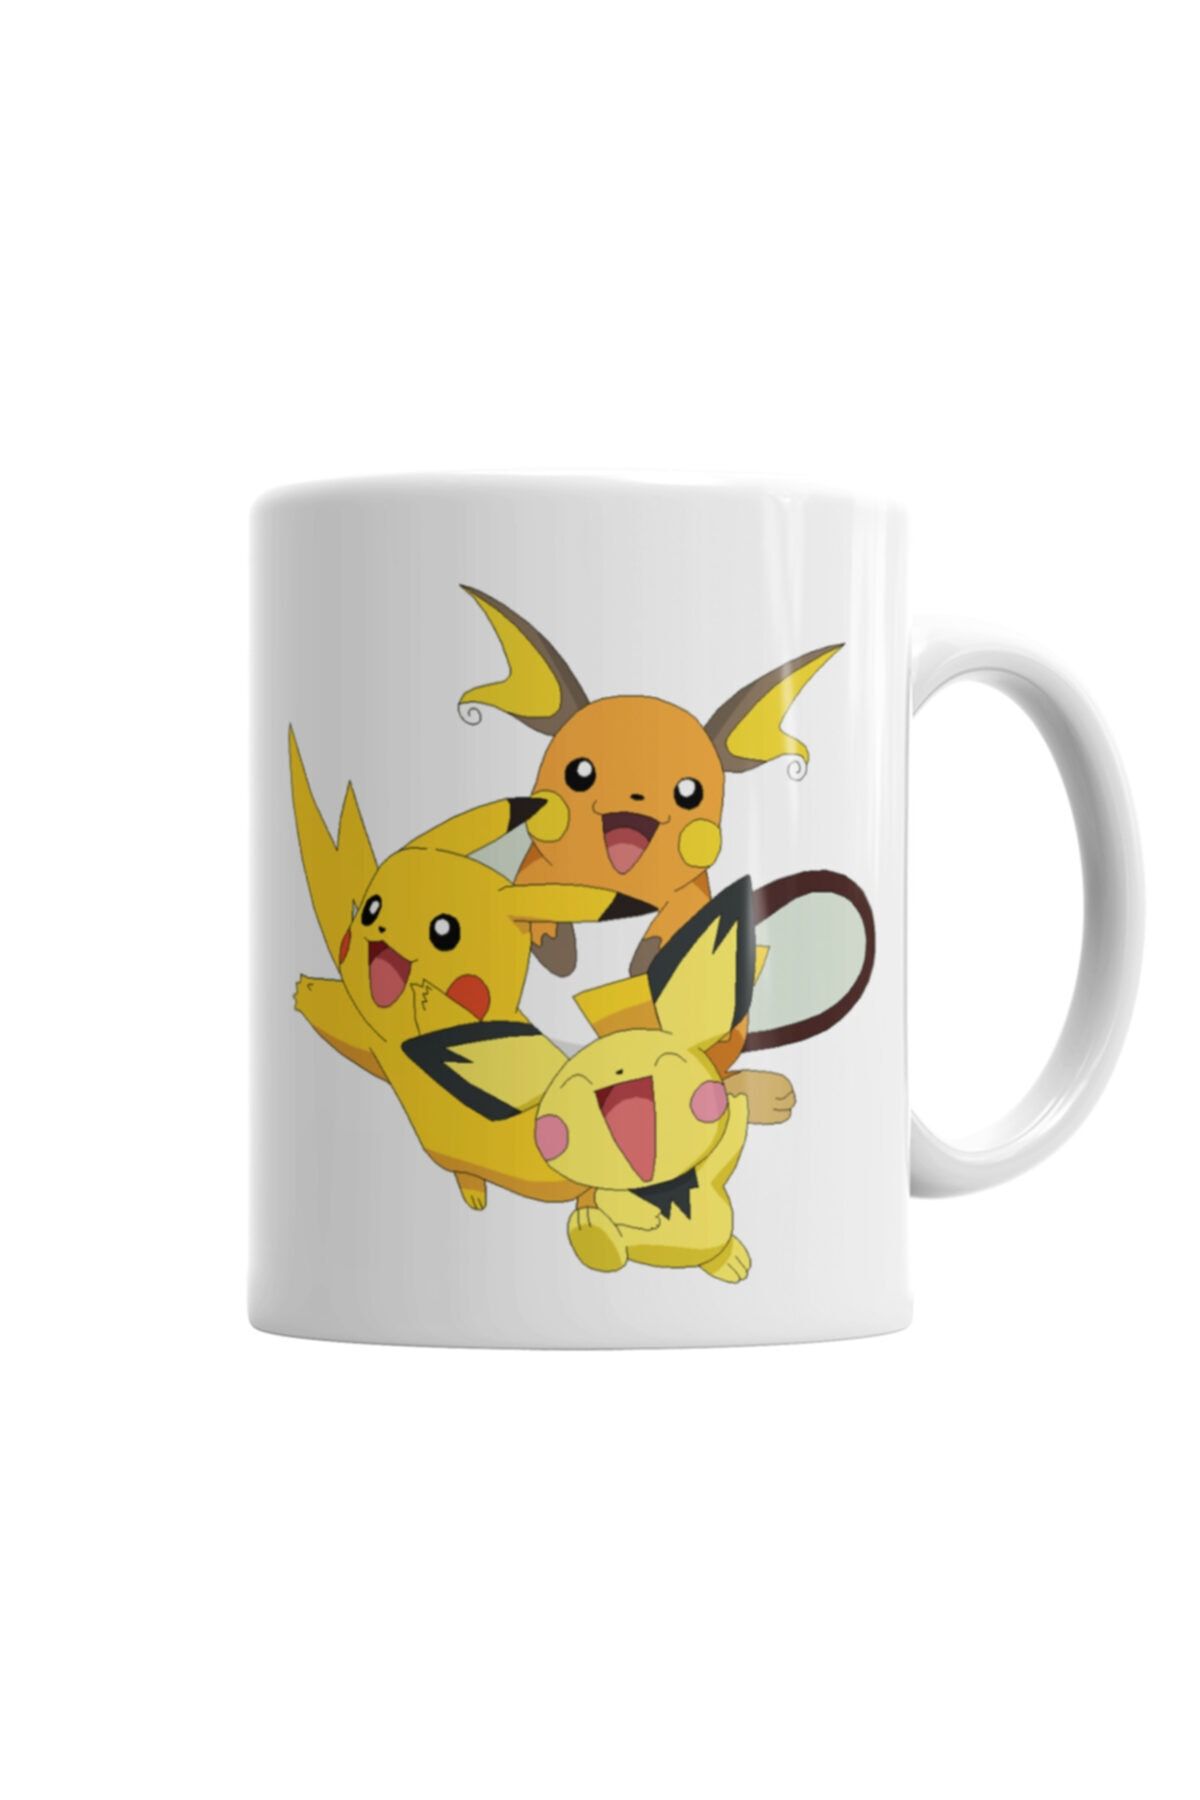 Baskı Dükkanı Raichu Pokemon Go Pikachu Kupa Bardak Porselen